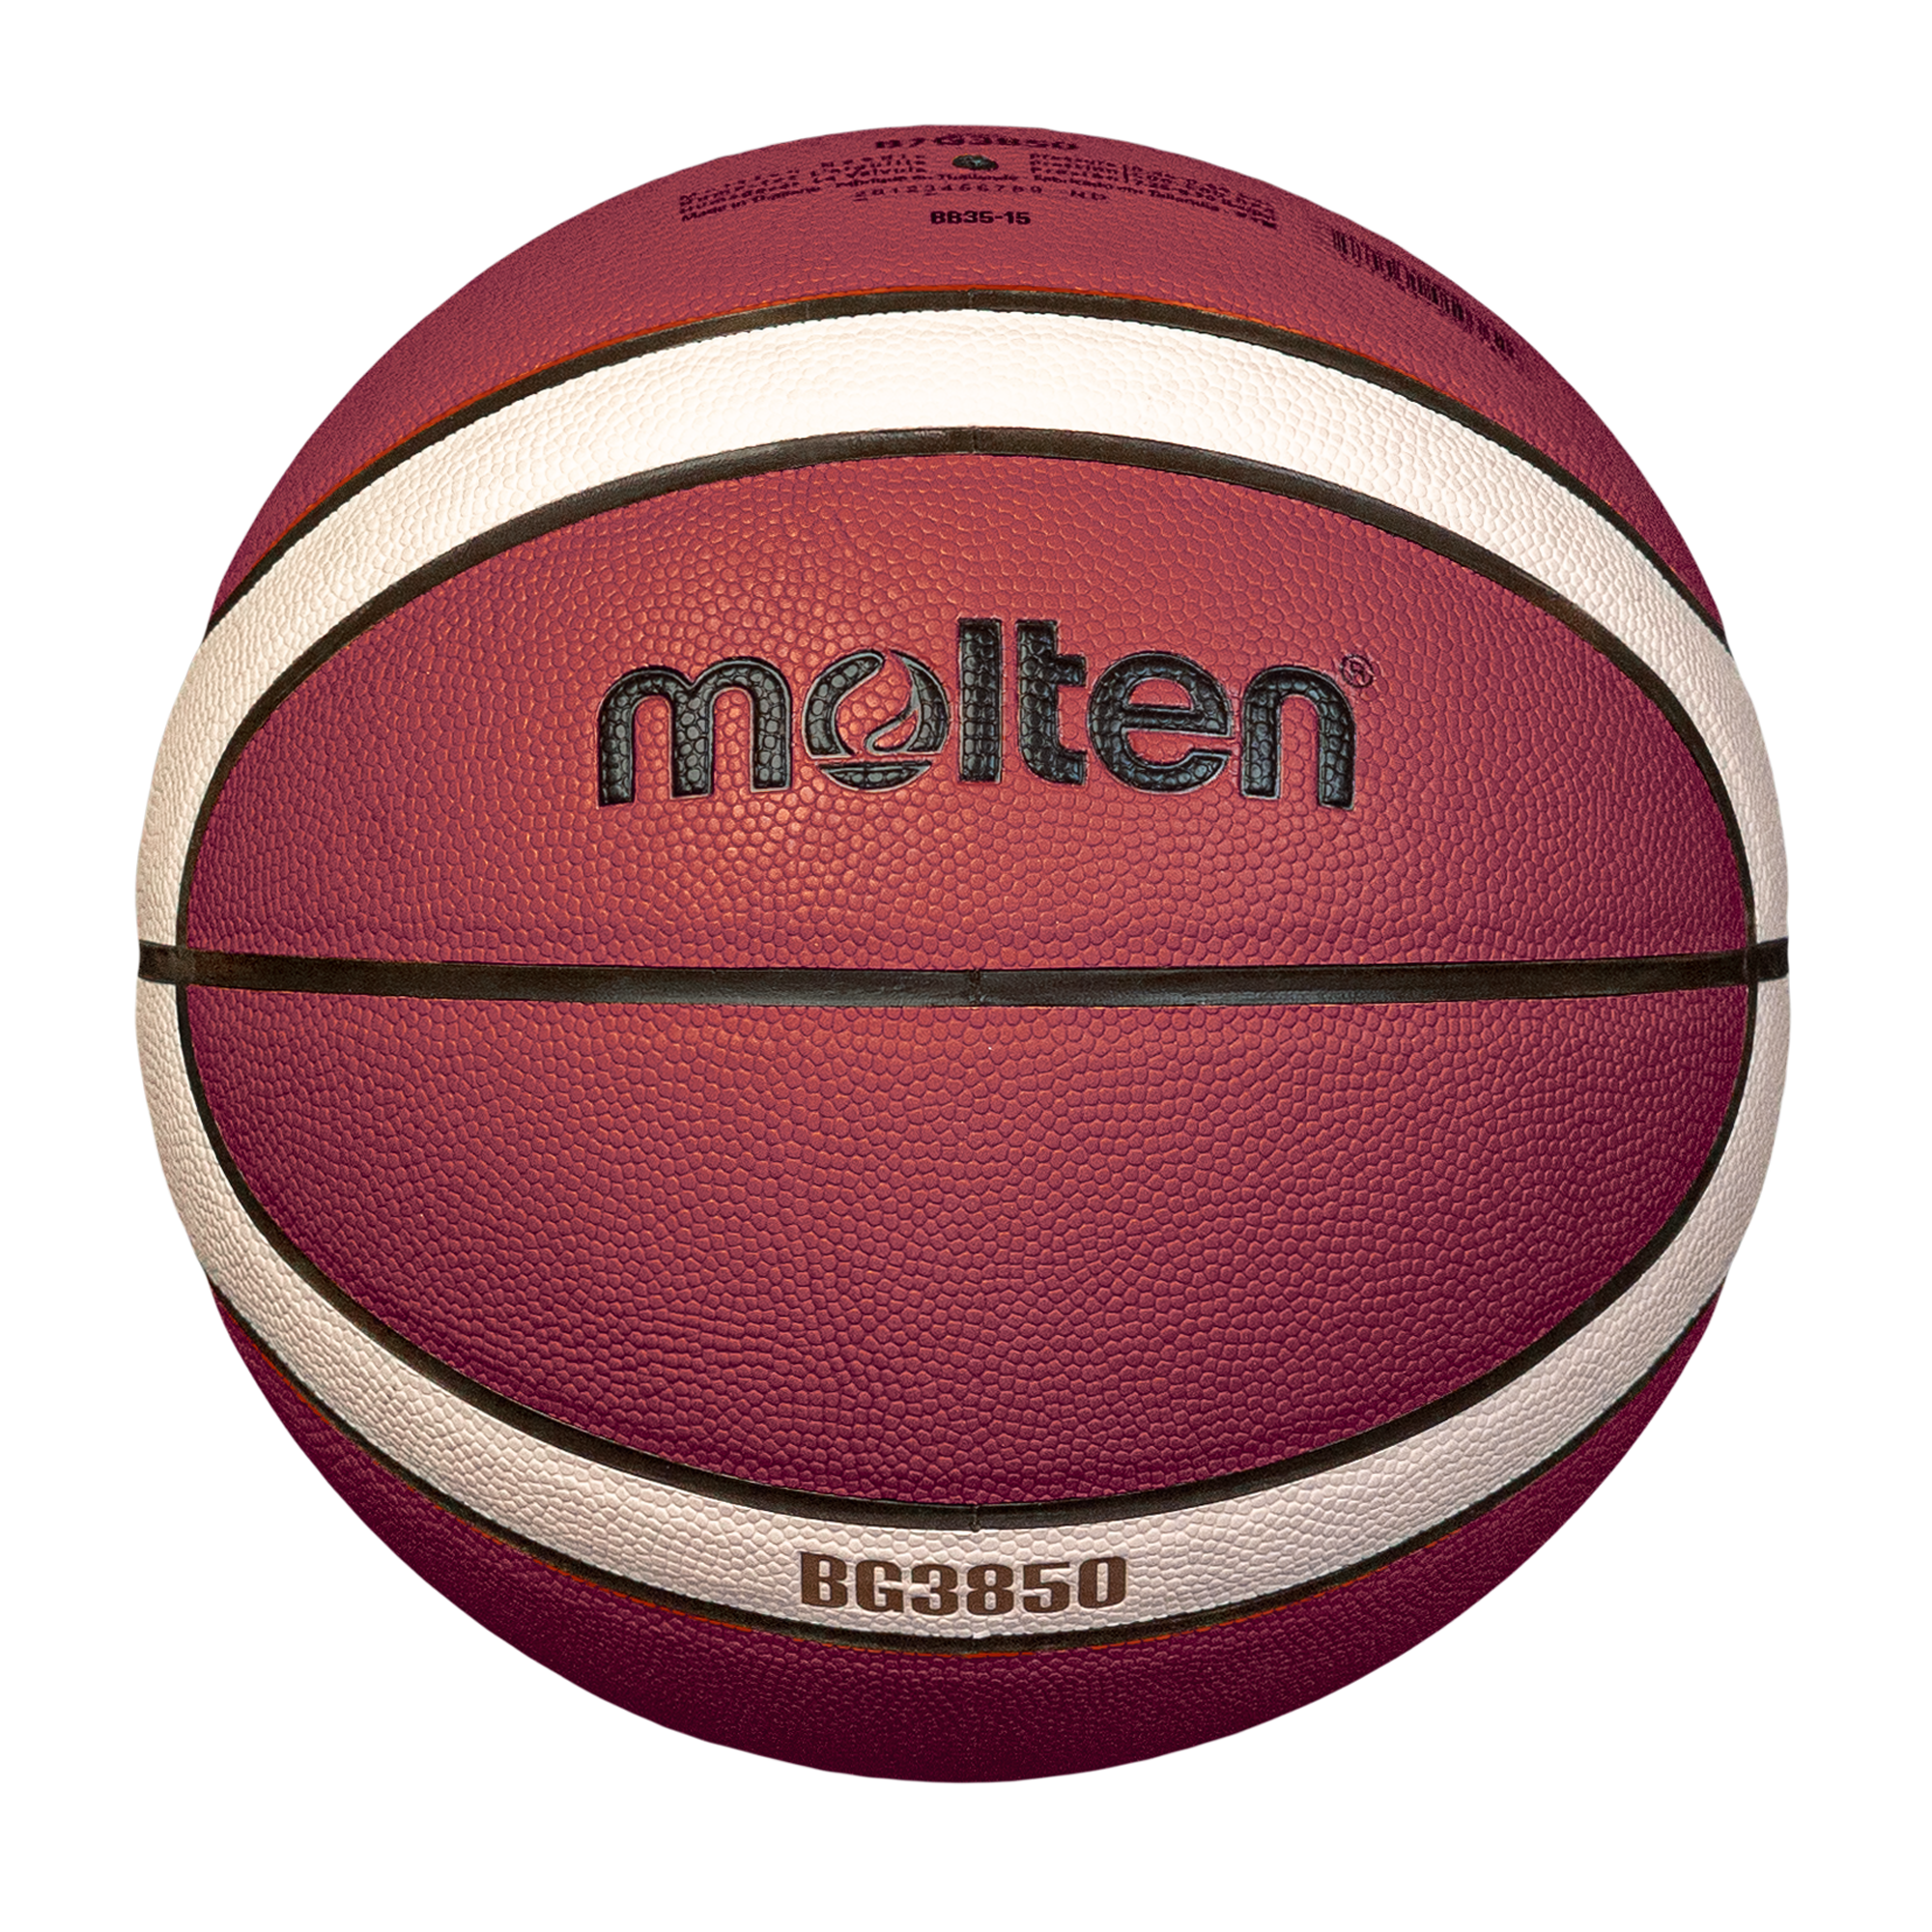 molten-basketball-B6G3850-S1_1.png